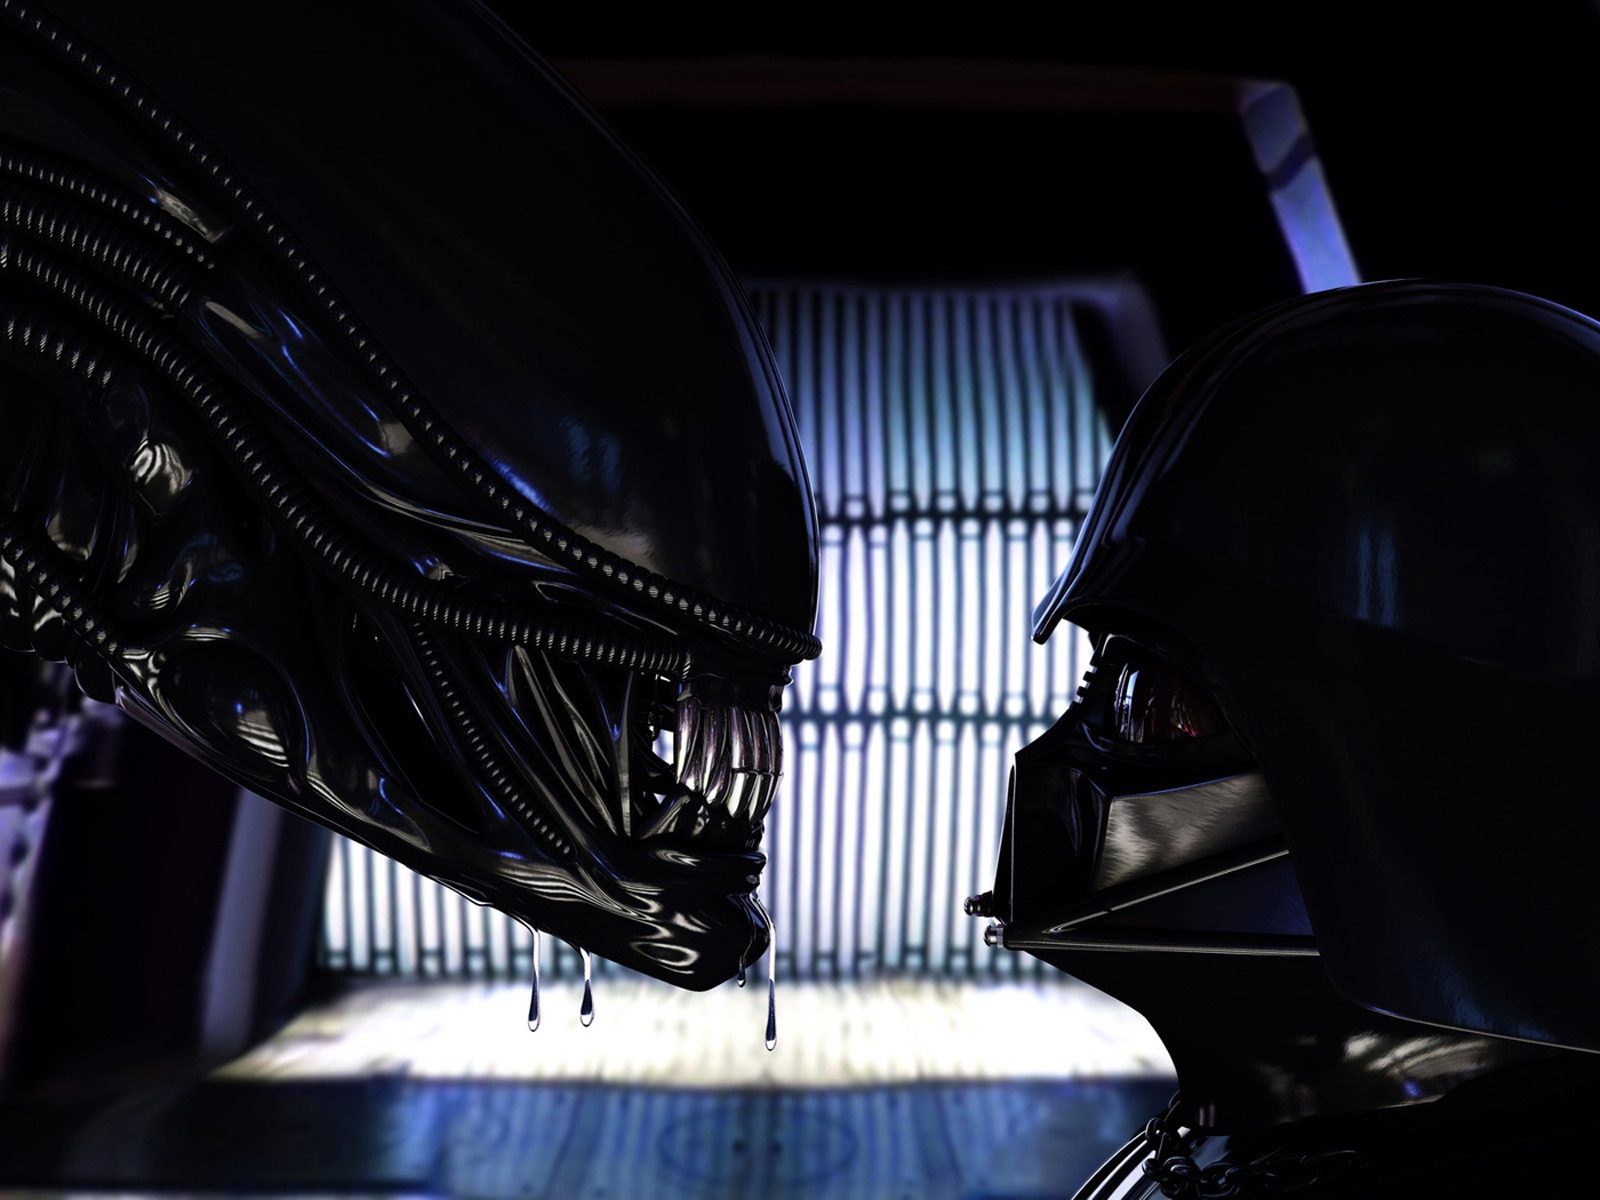 Alien vs Darth Vader for 1600 x 1200 resolution